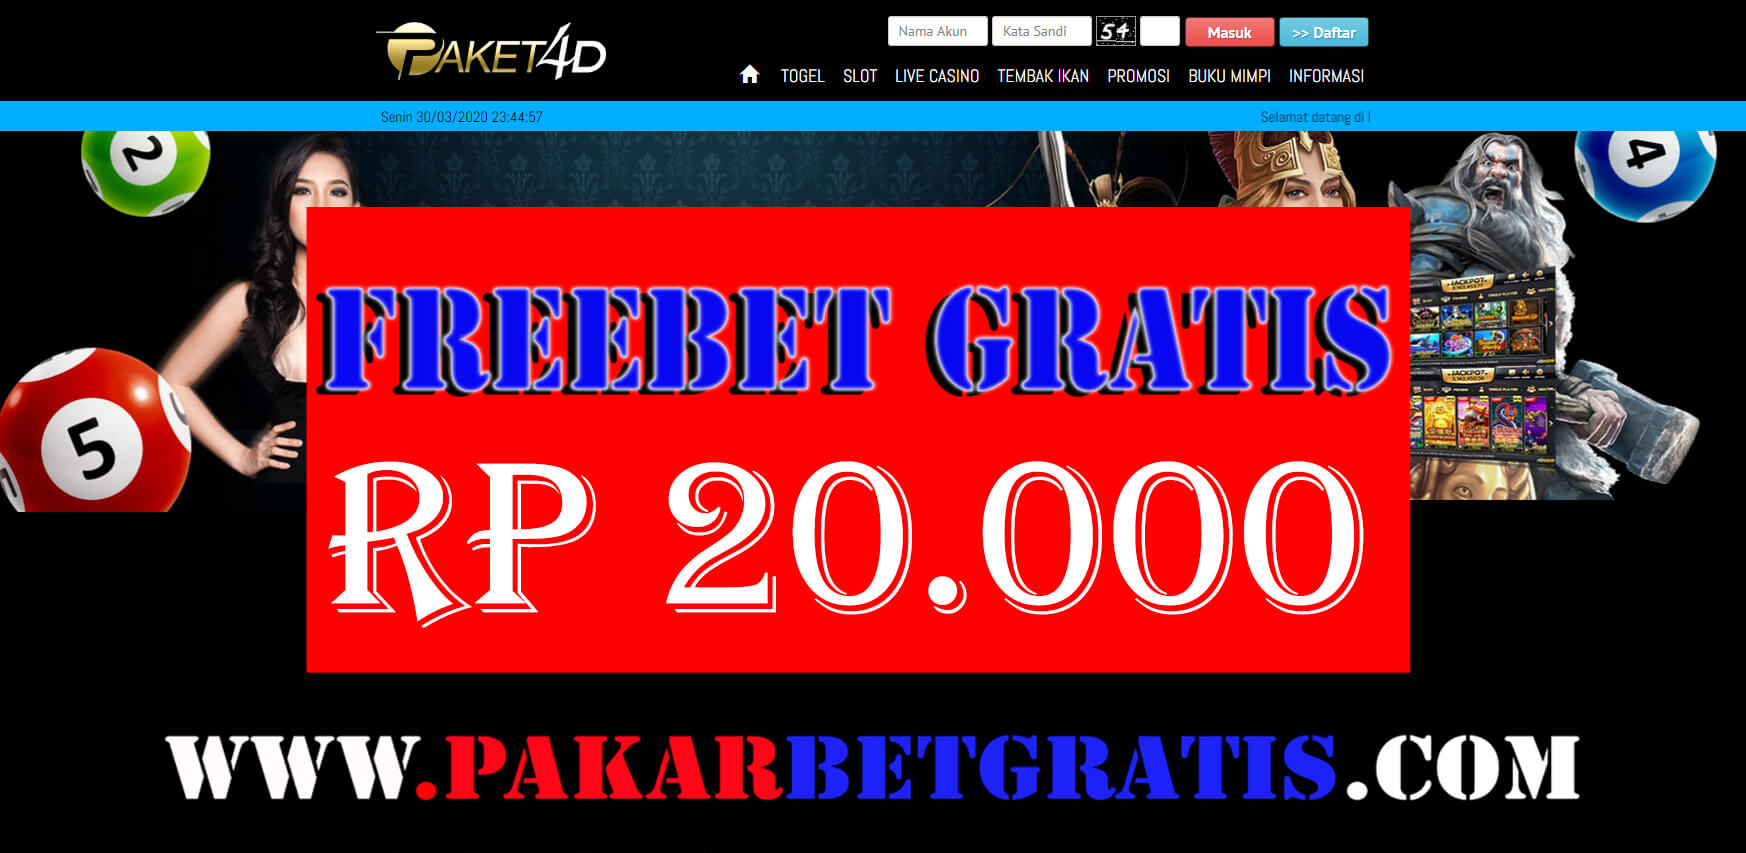 Freebet gratis paket4d Rp 20.000 Tanpa deposit